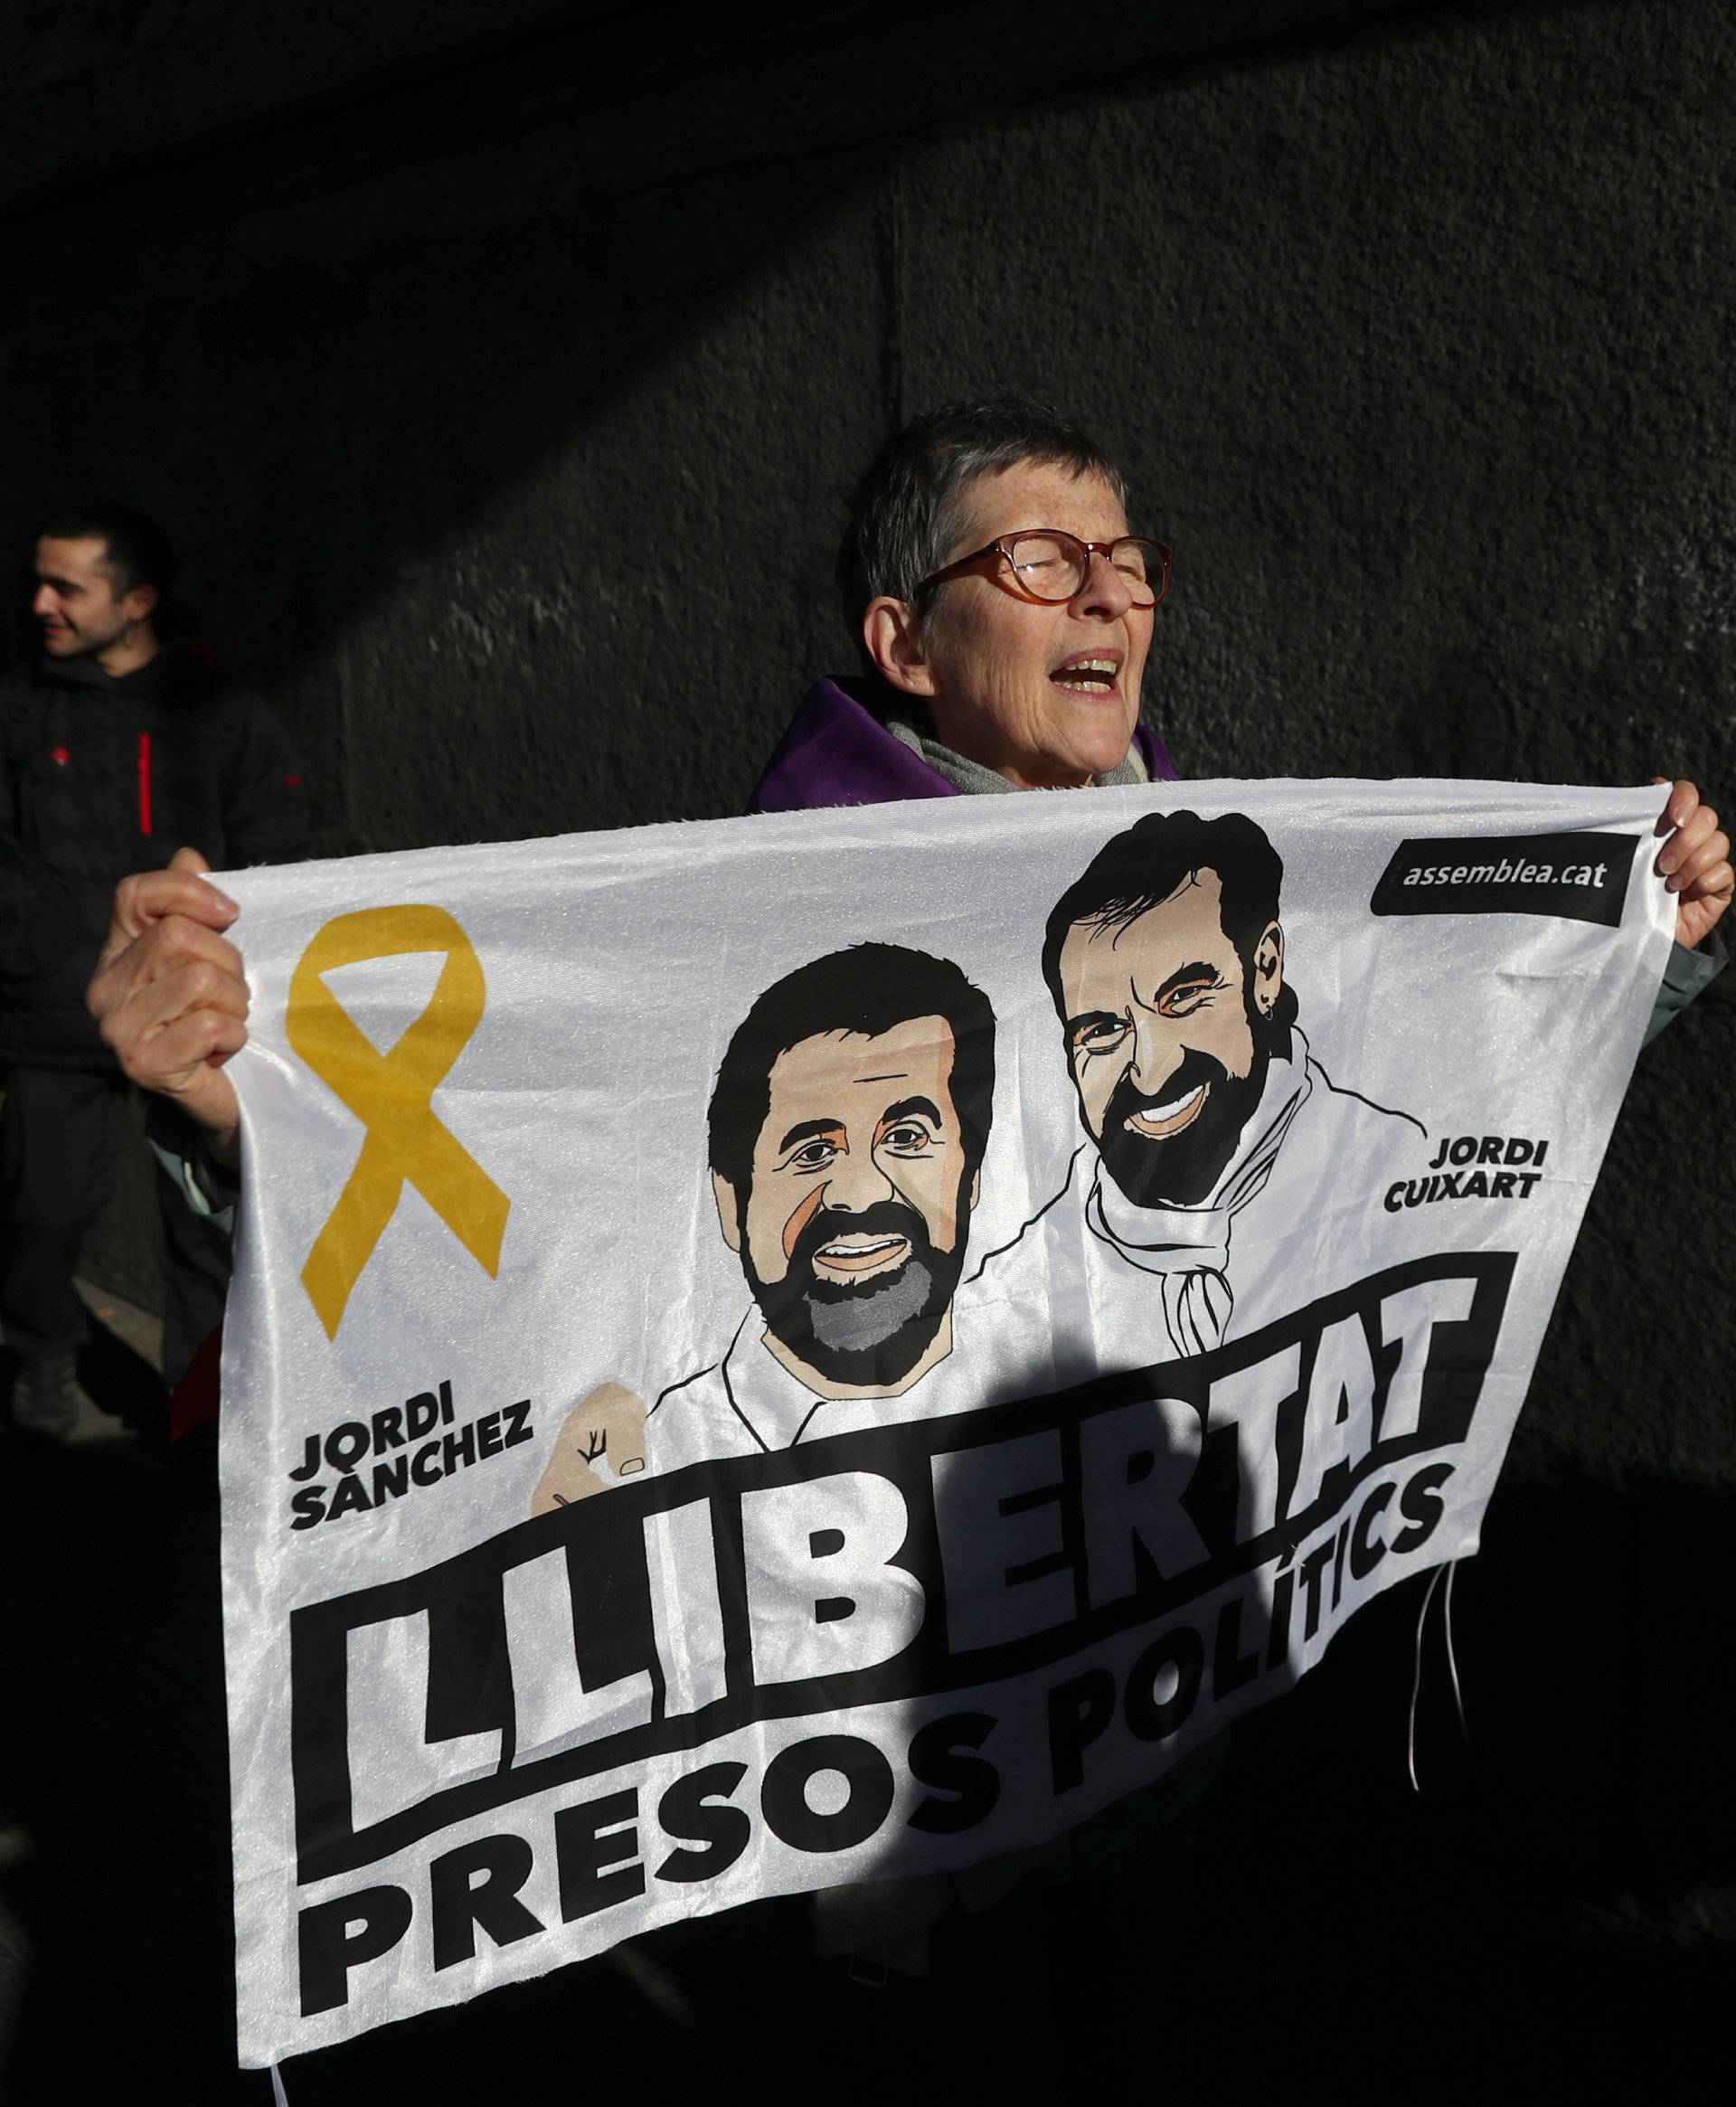 Trial of jailed Catalan separatist leaders in Madrid